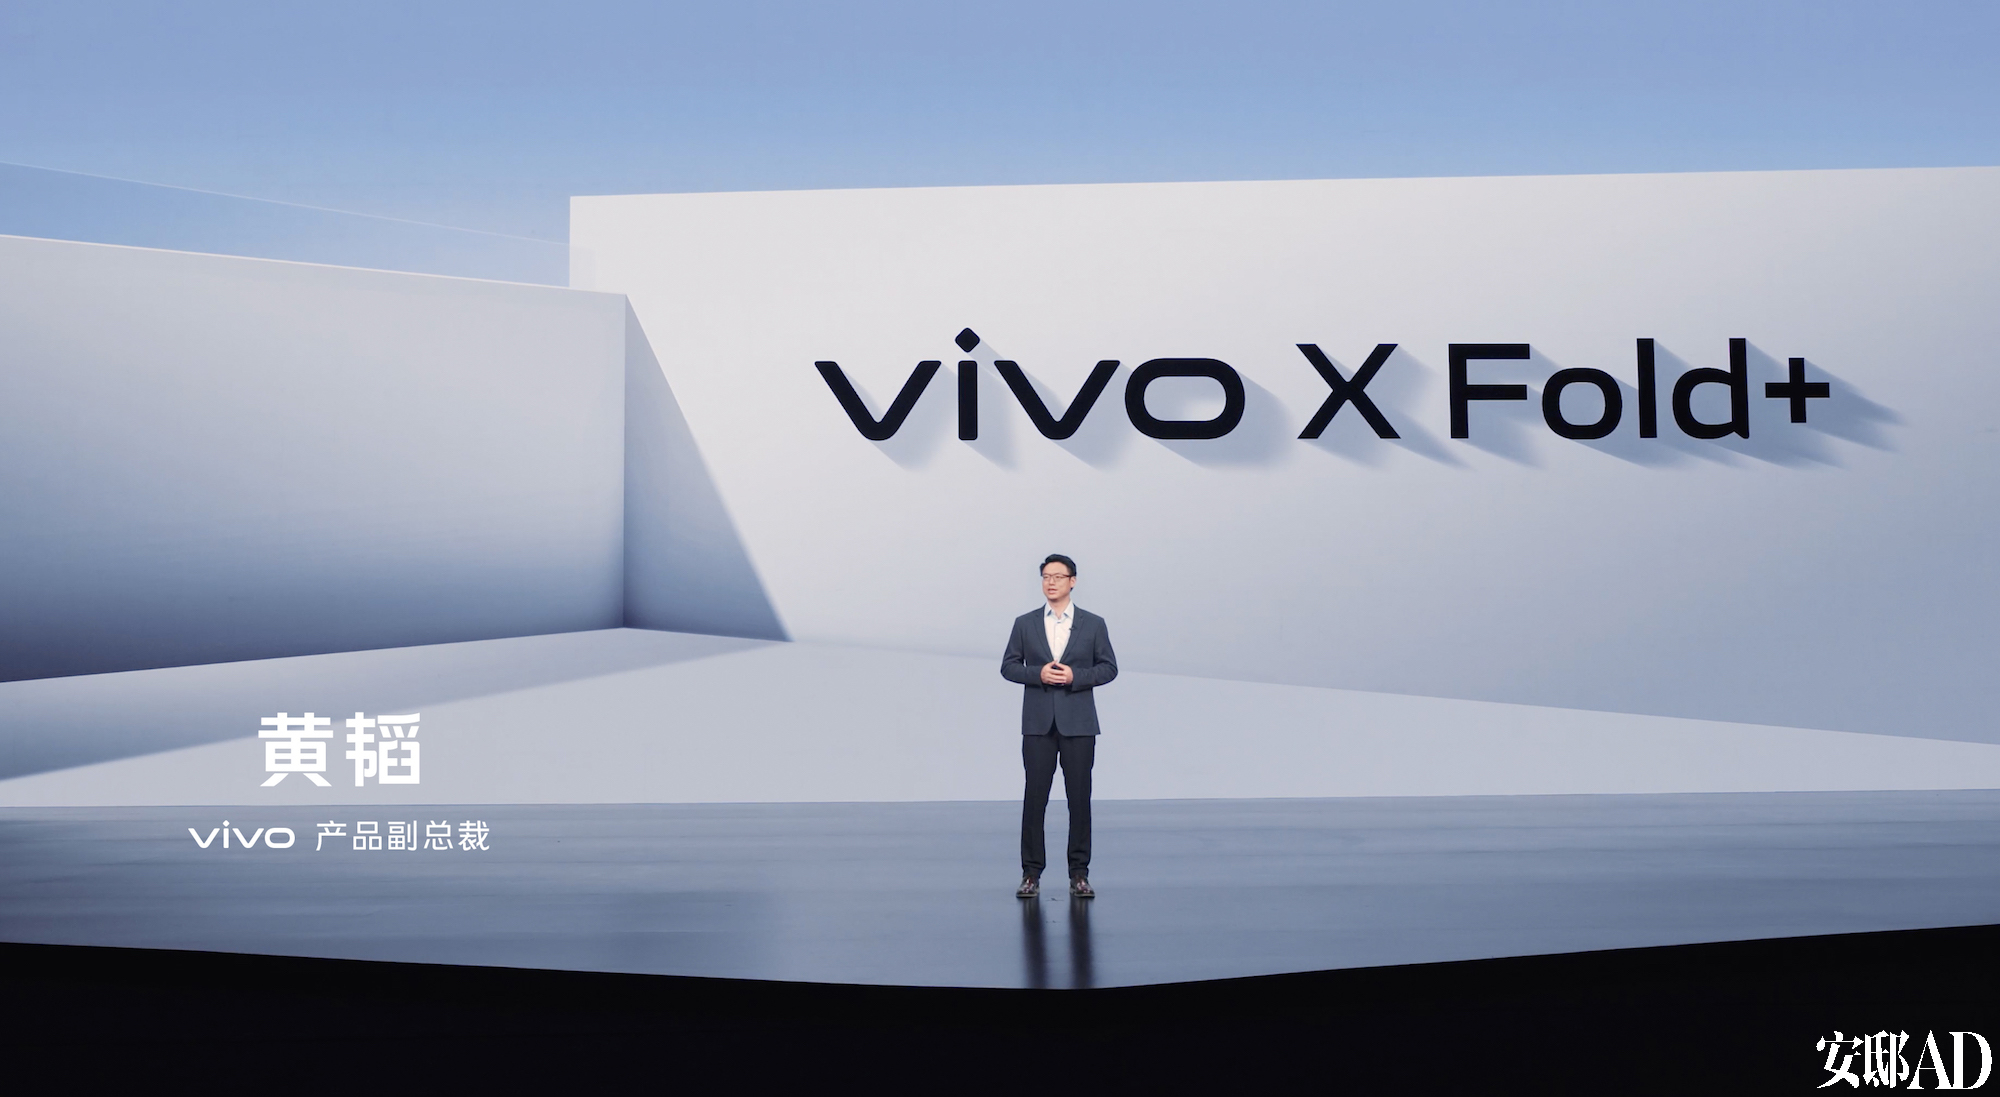 设计性能体验全面提升 vivo X Fold+折叠屏正式发布